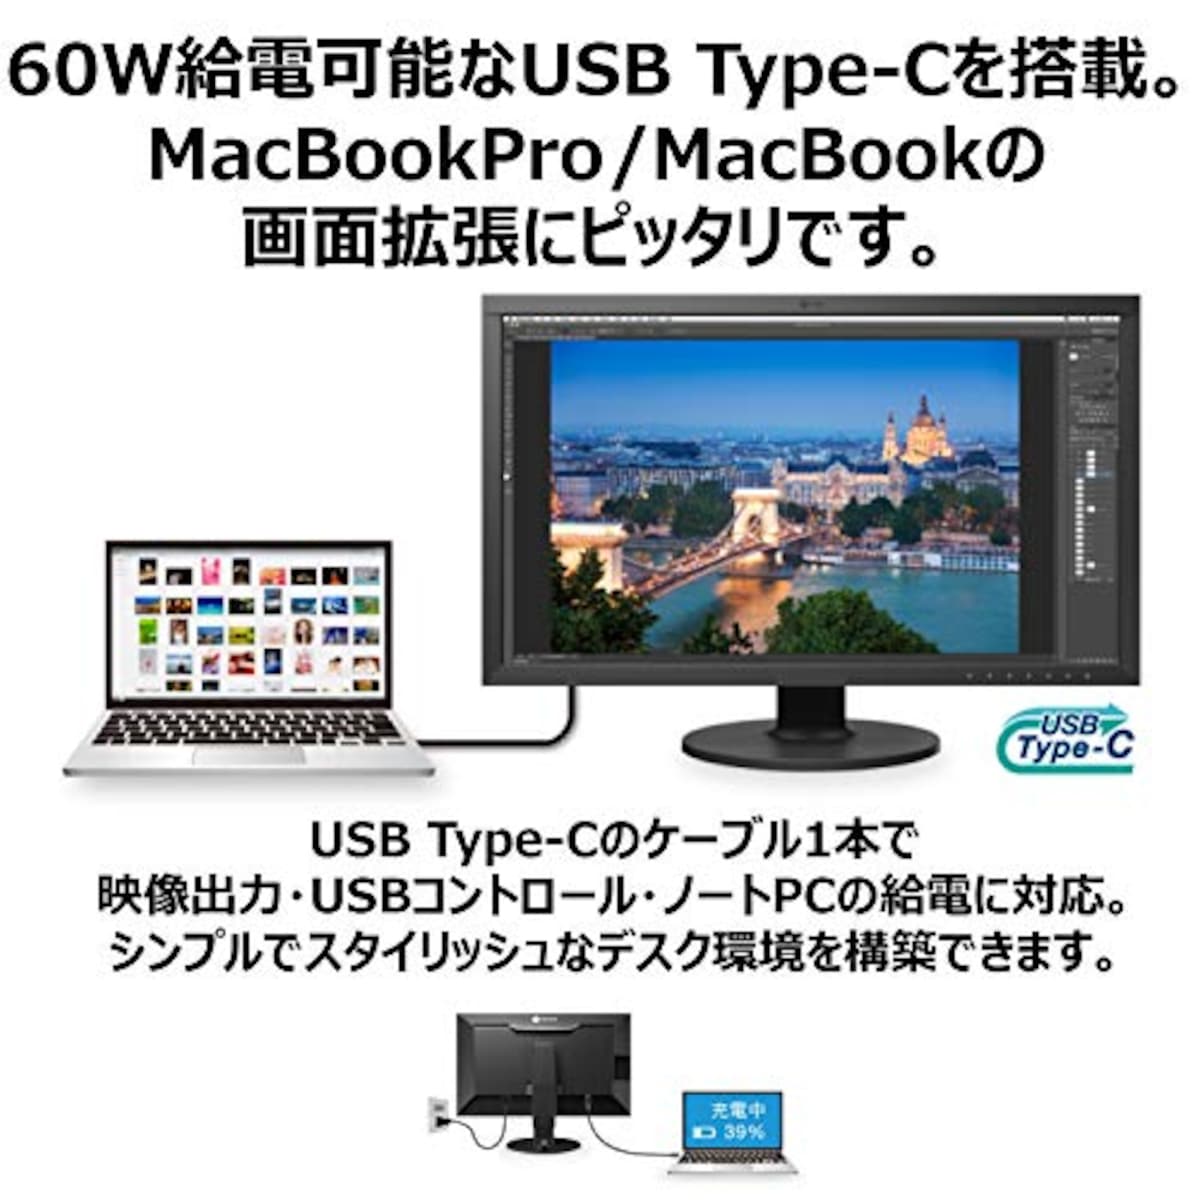  EIZO ColorEdge CS2731 (27型 QHD Wide 1440p カラーマネージメント液晶モニター/Adobe RGB 99%/USB Type-C/)画像2 